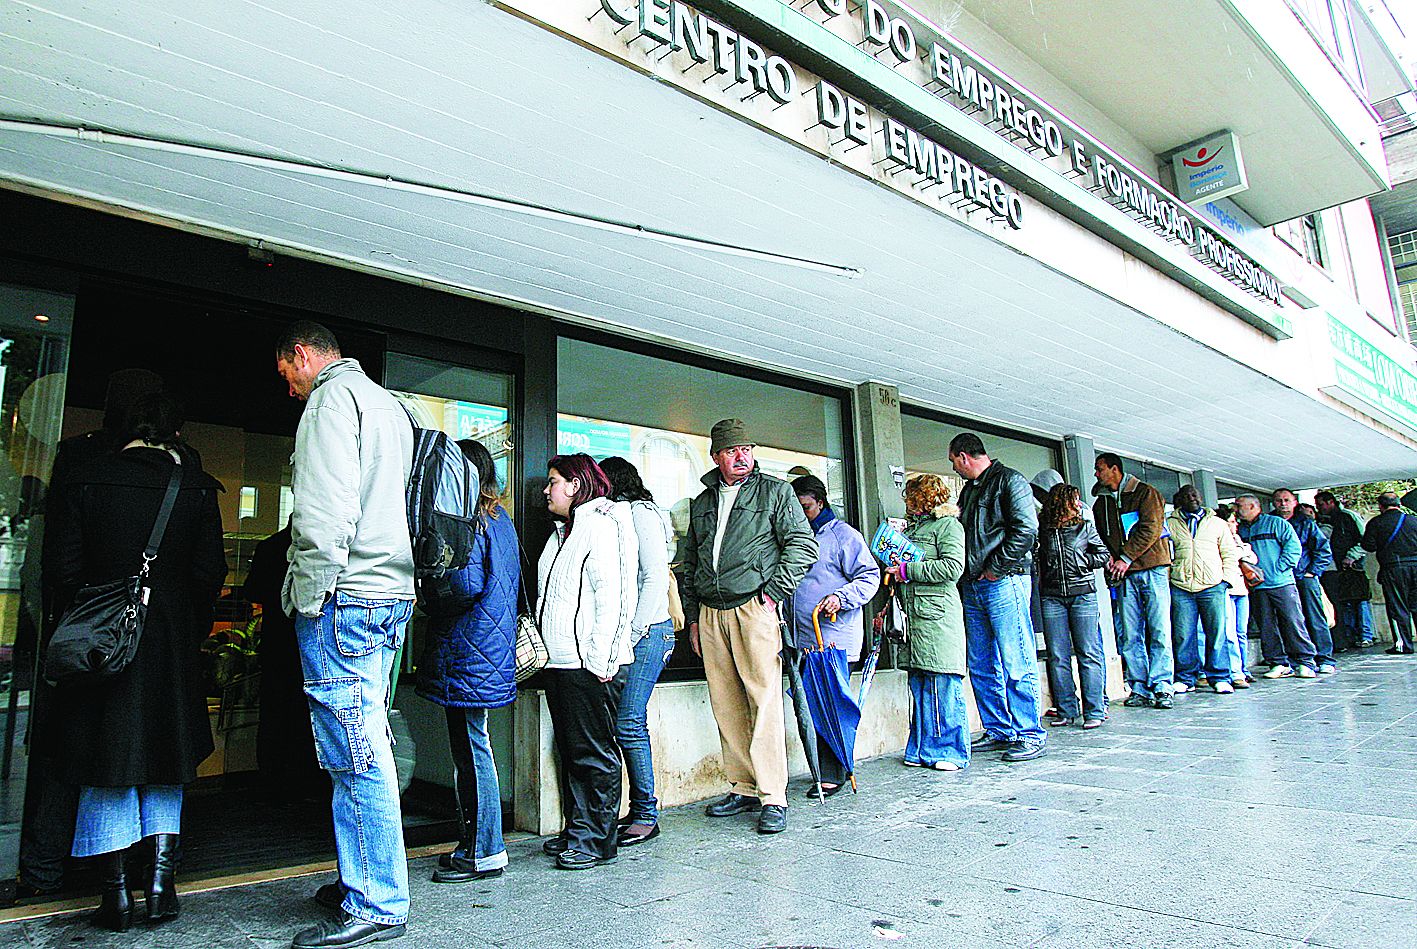 Desemprego: Taxa aumentou para 12,2% no quarto trimestre